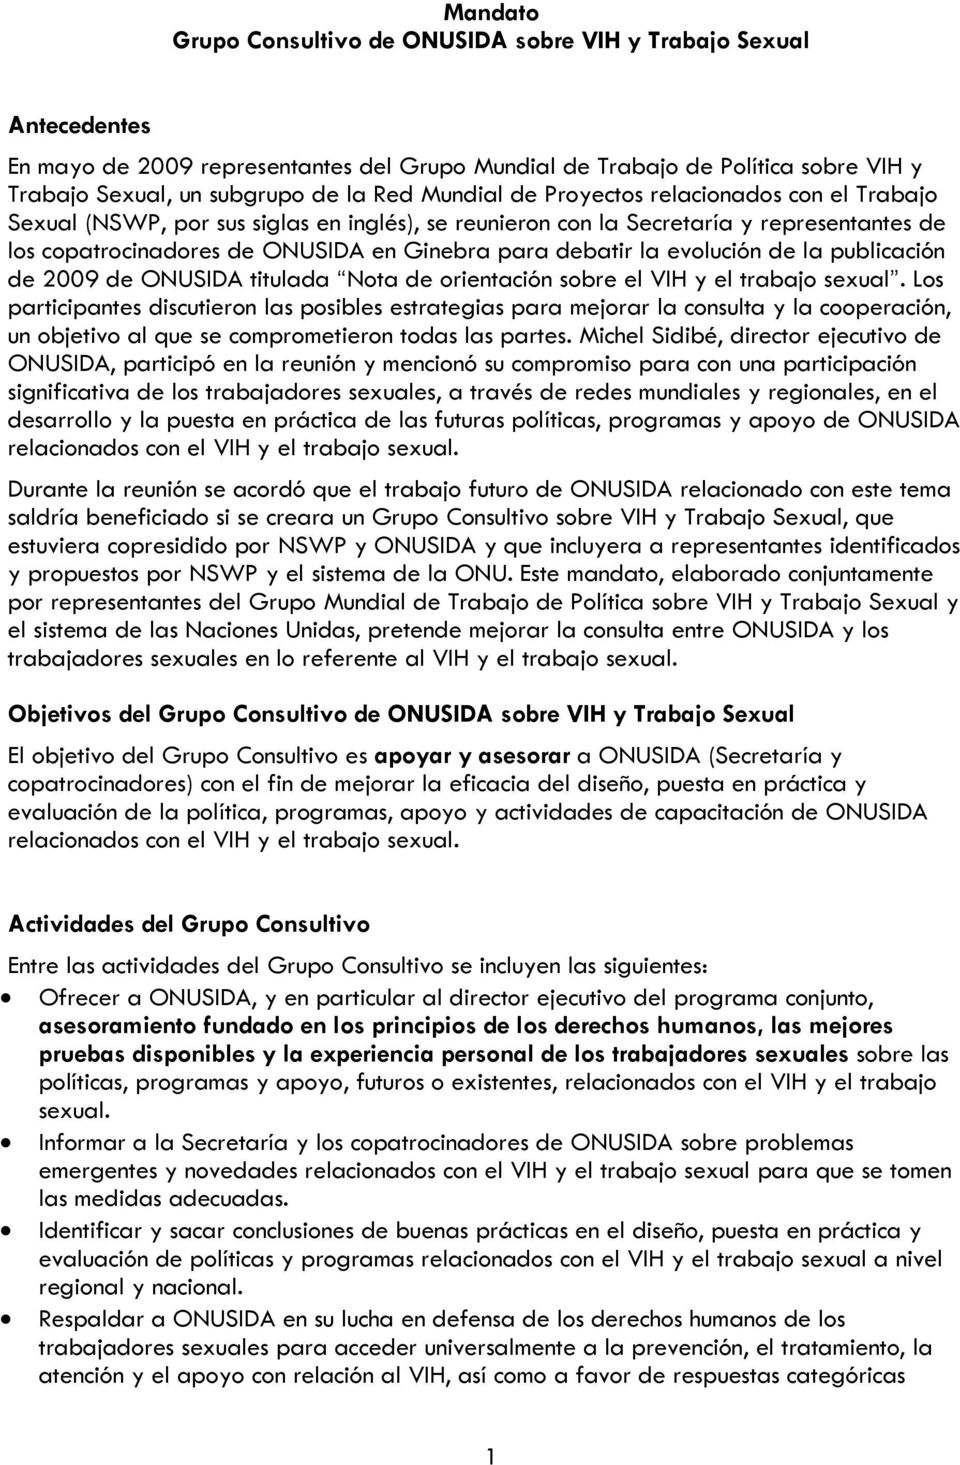 evolución de la publicación de 2009 de ONUSIDA titulada Nota de orientación sobre el VIH y el trabajo sexual.